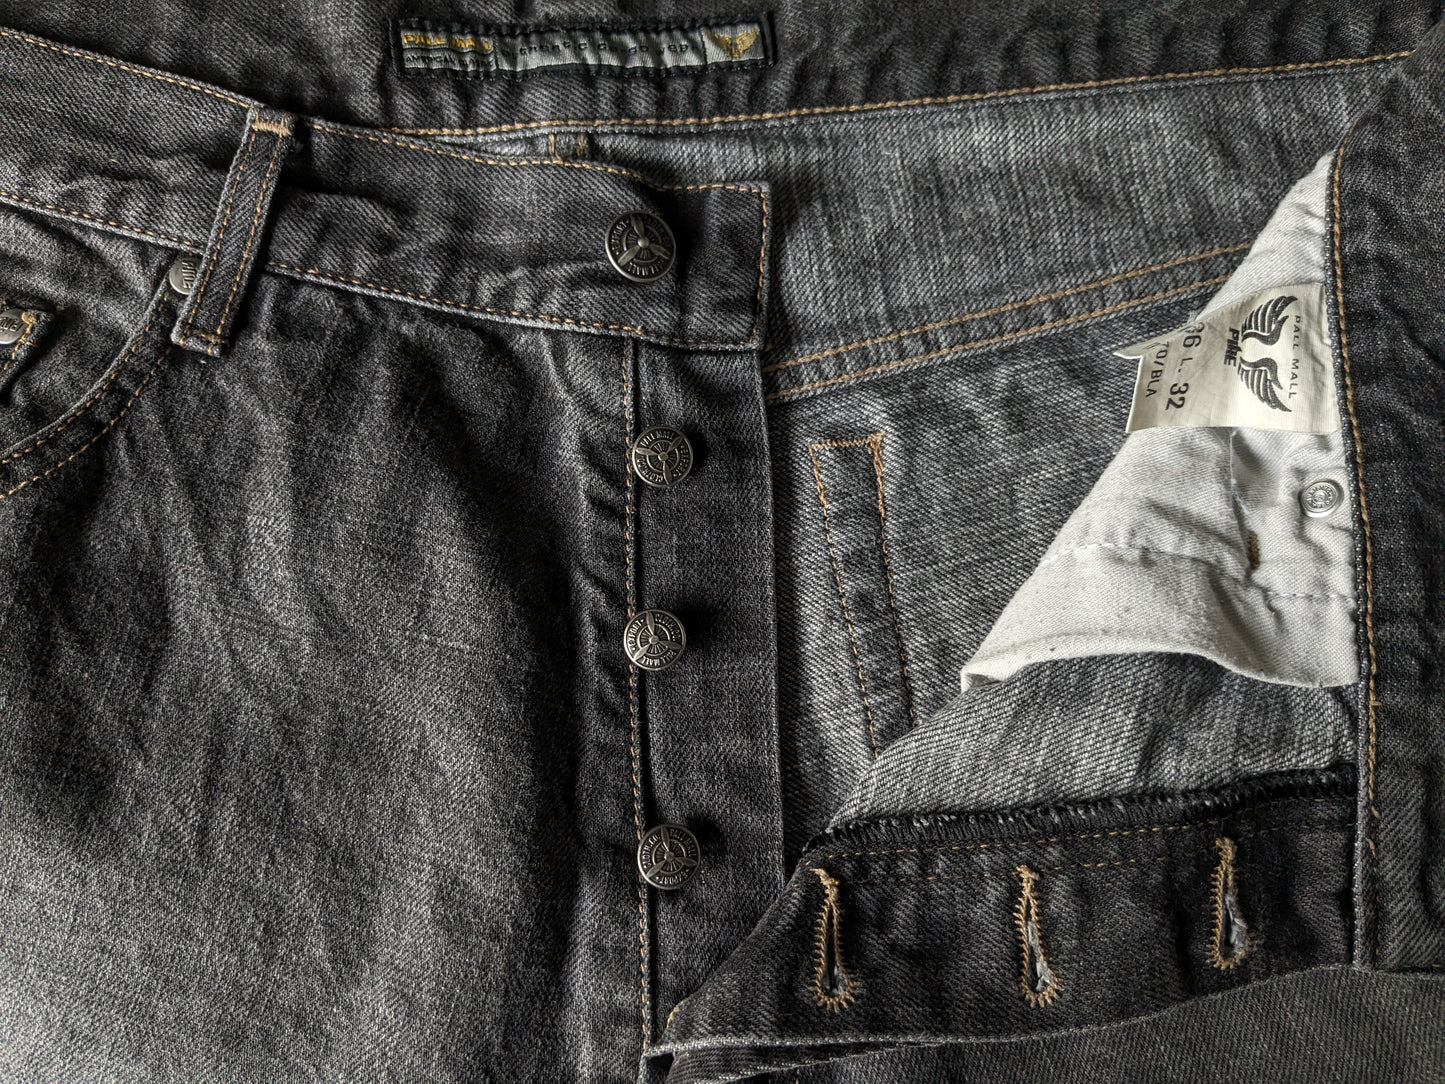 Jeans PME / Pall Mall. Gris noir mélangé. Taille W36 - L32. Tapez "dakota".